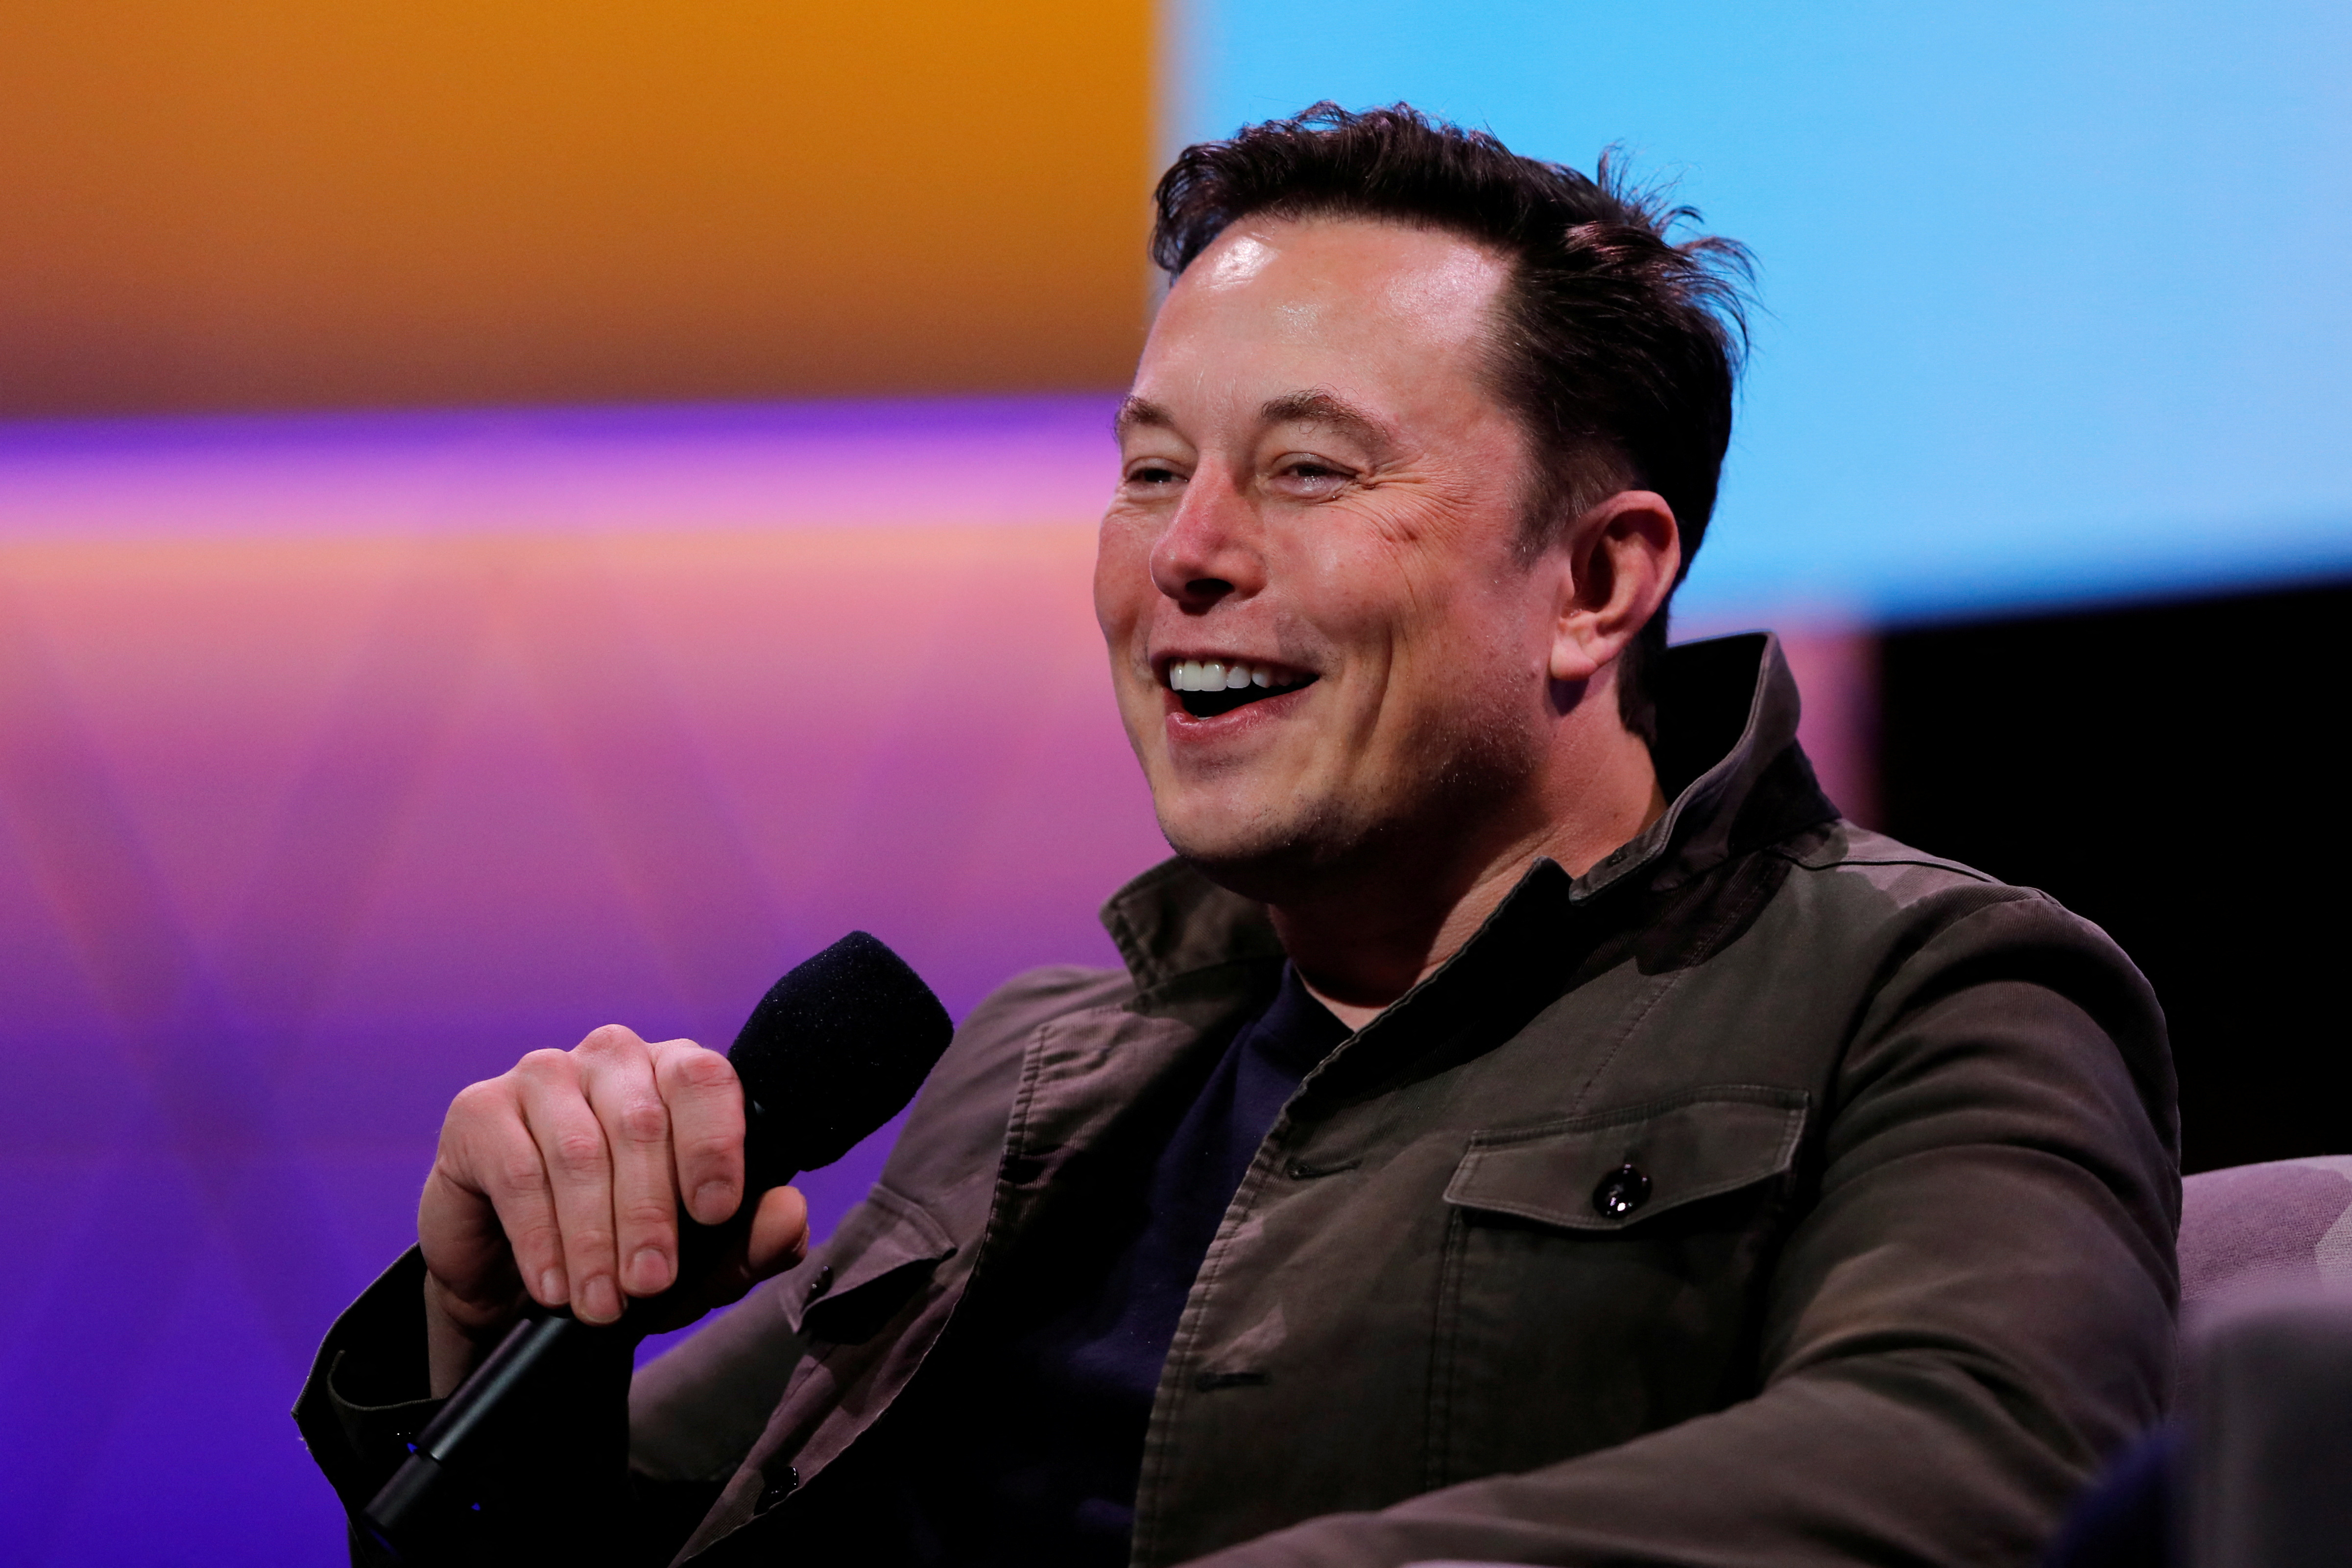 FOTO DE ARCHIVO - El propietario de SpaceX y CEO de Tesla, Elon Musk, habla durante una conversación con el legendario diseñador de juegos Todd Howard en la convención de juegos E3 en Los Ángeles.